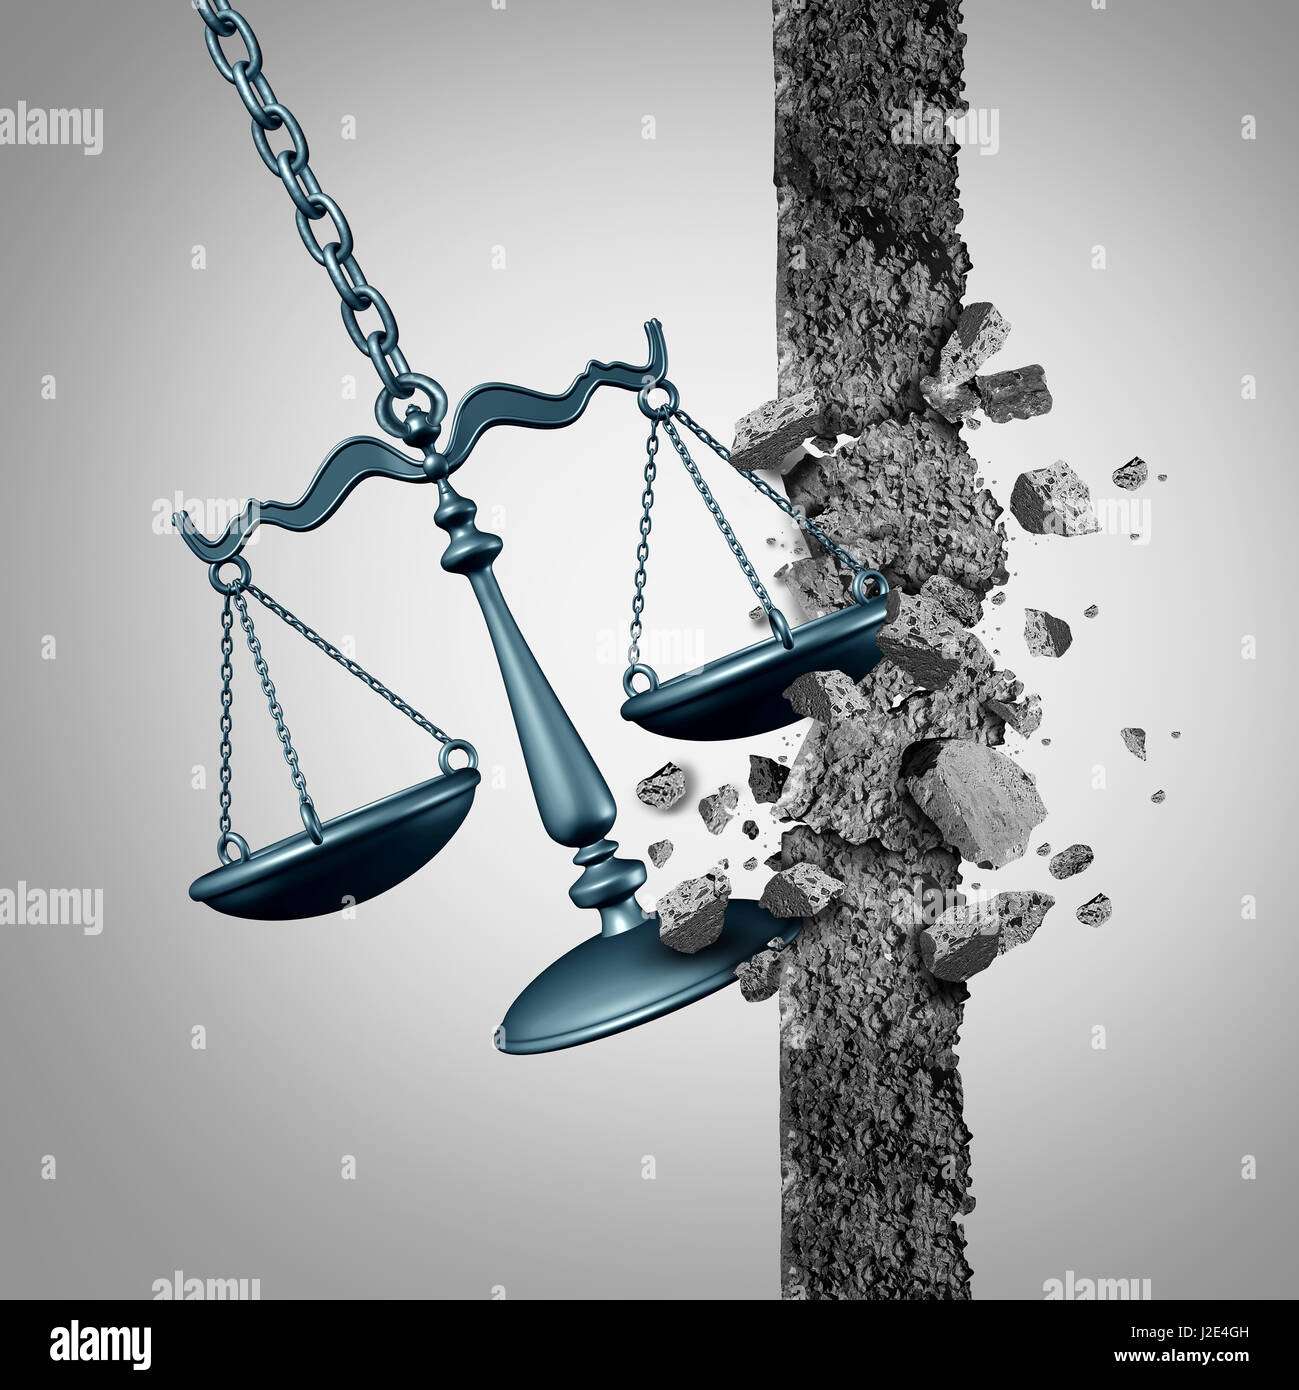 Motif juridique de rupture et l'avocat comme un symbole de réussite dans le domaine des services à l'échelle de la justice de la destruction d'un mur comme un boulet avec 3D illustration éléments. Banque D'Images